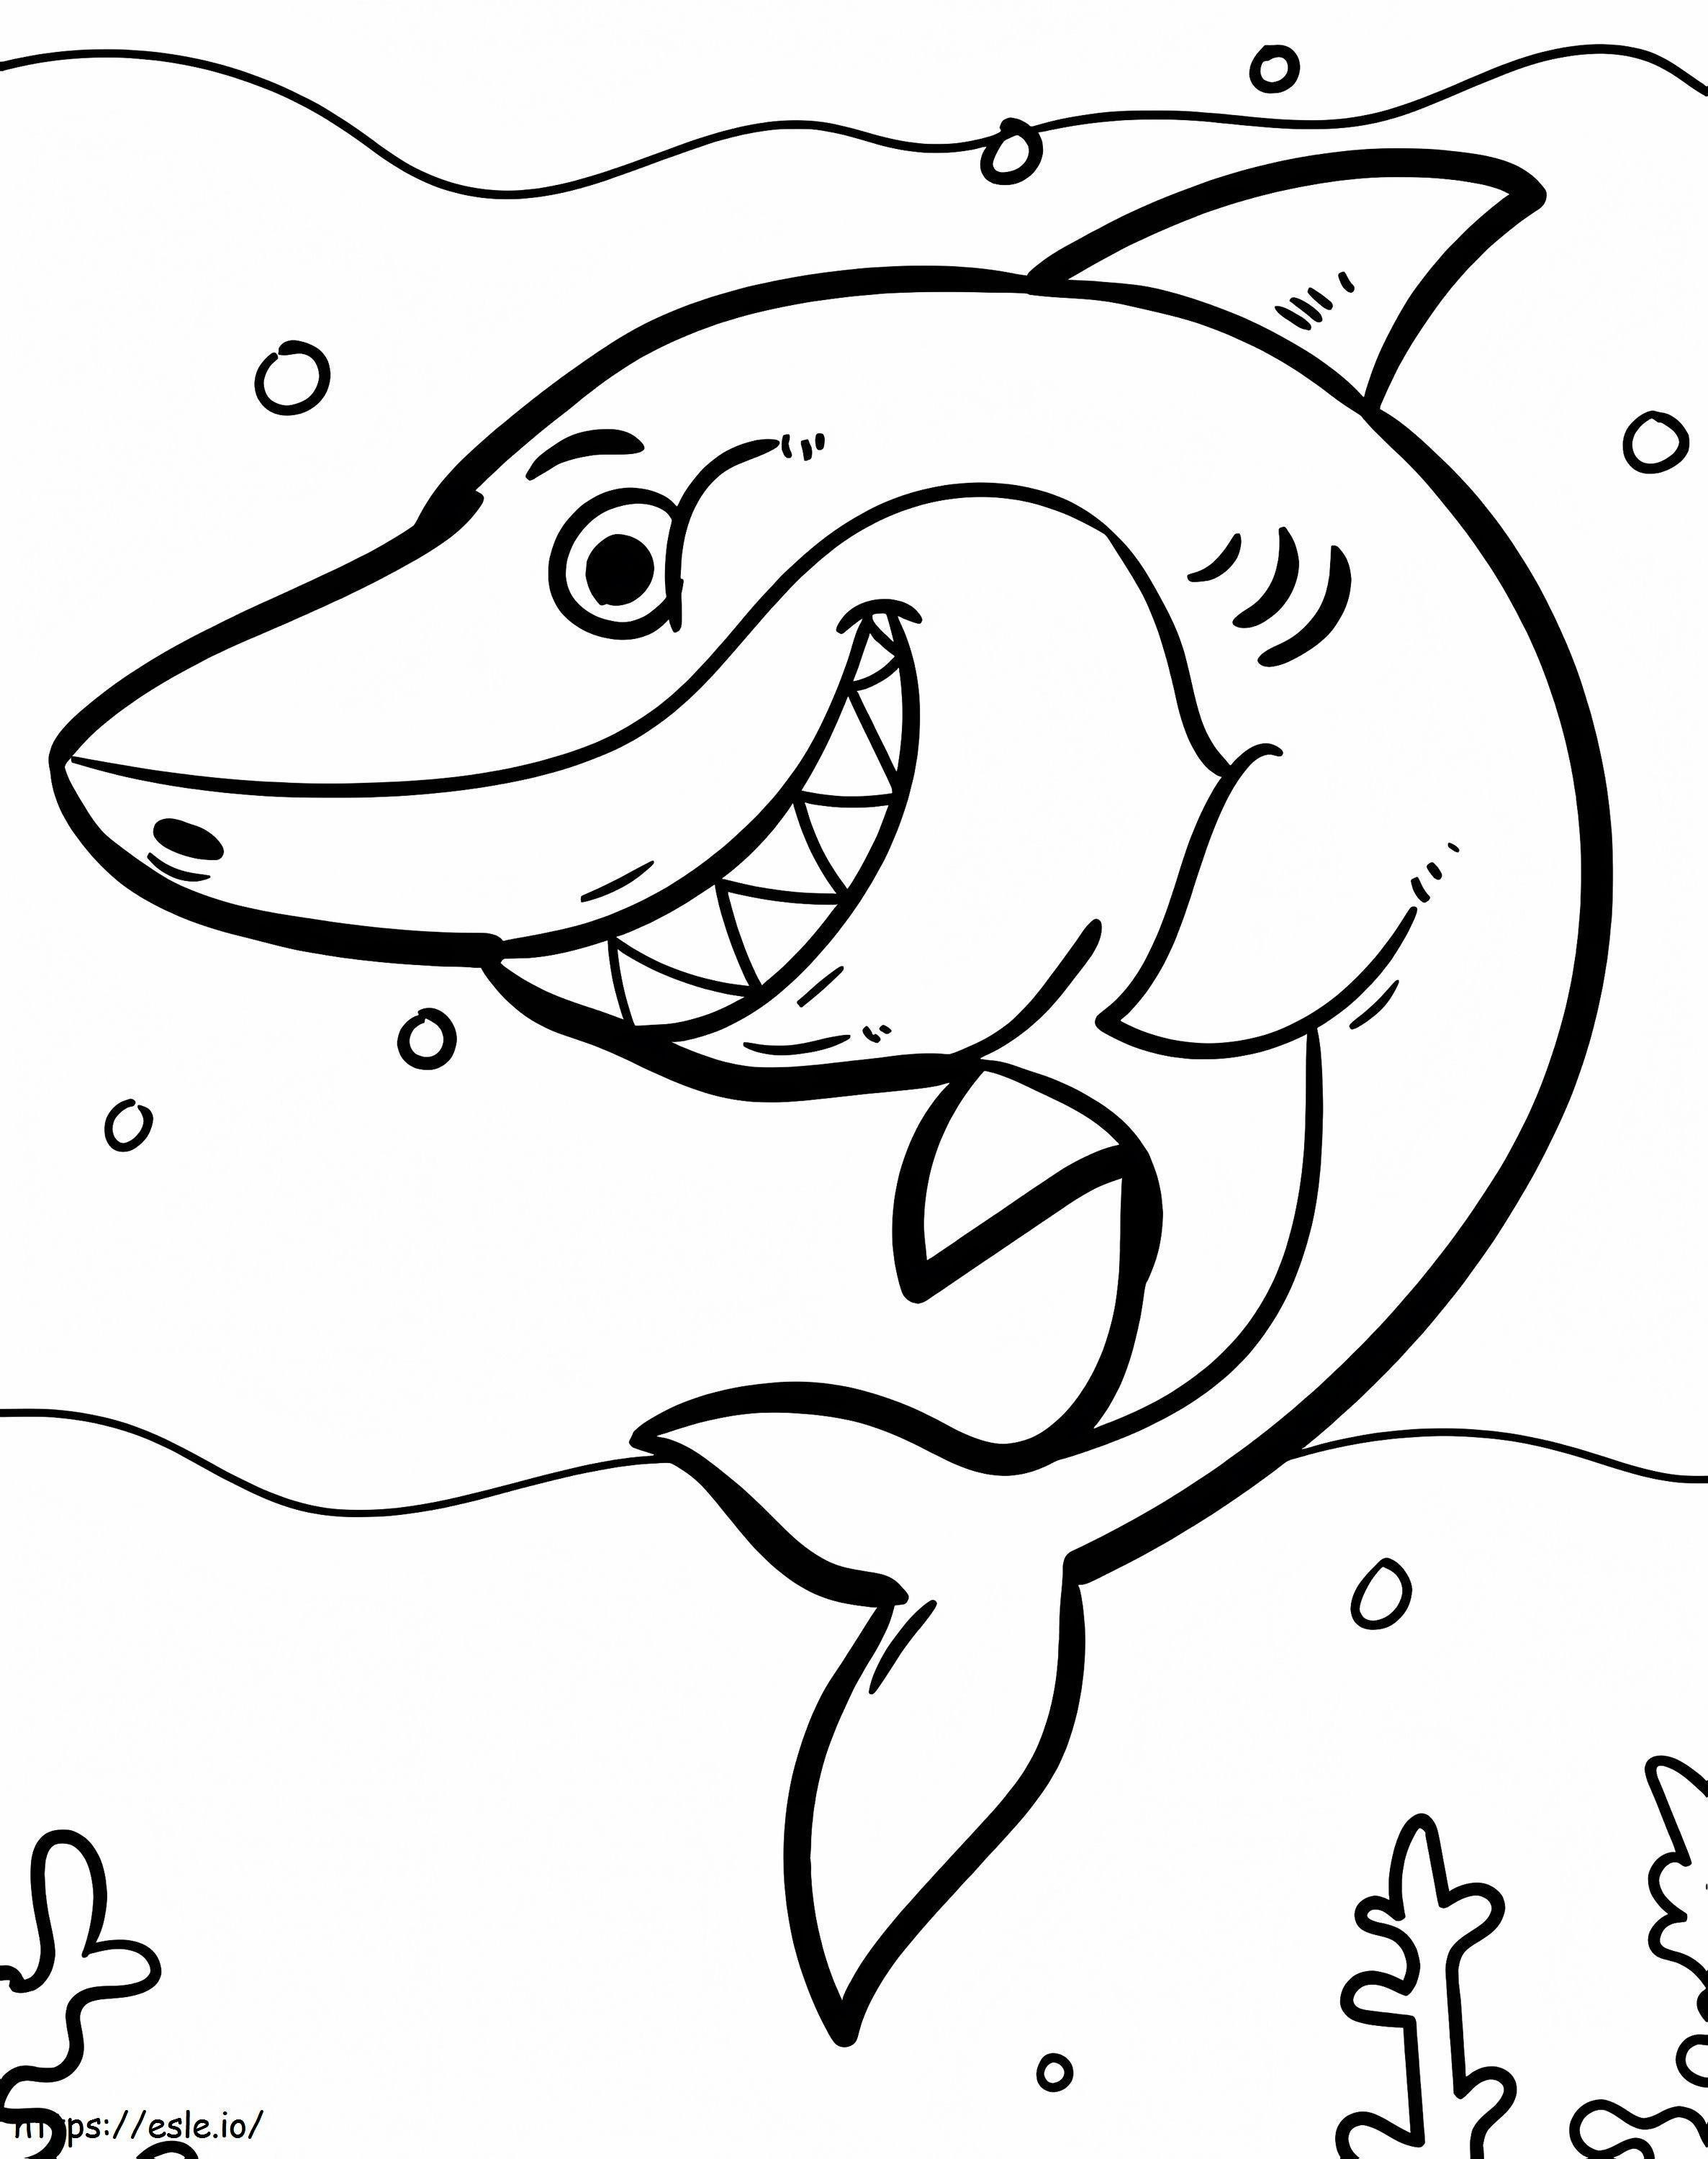 Tubarão sorrindo para colorir